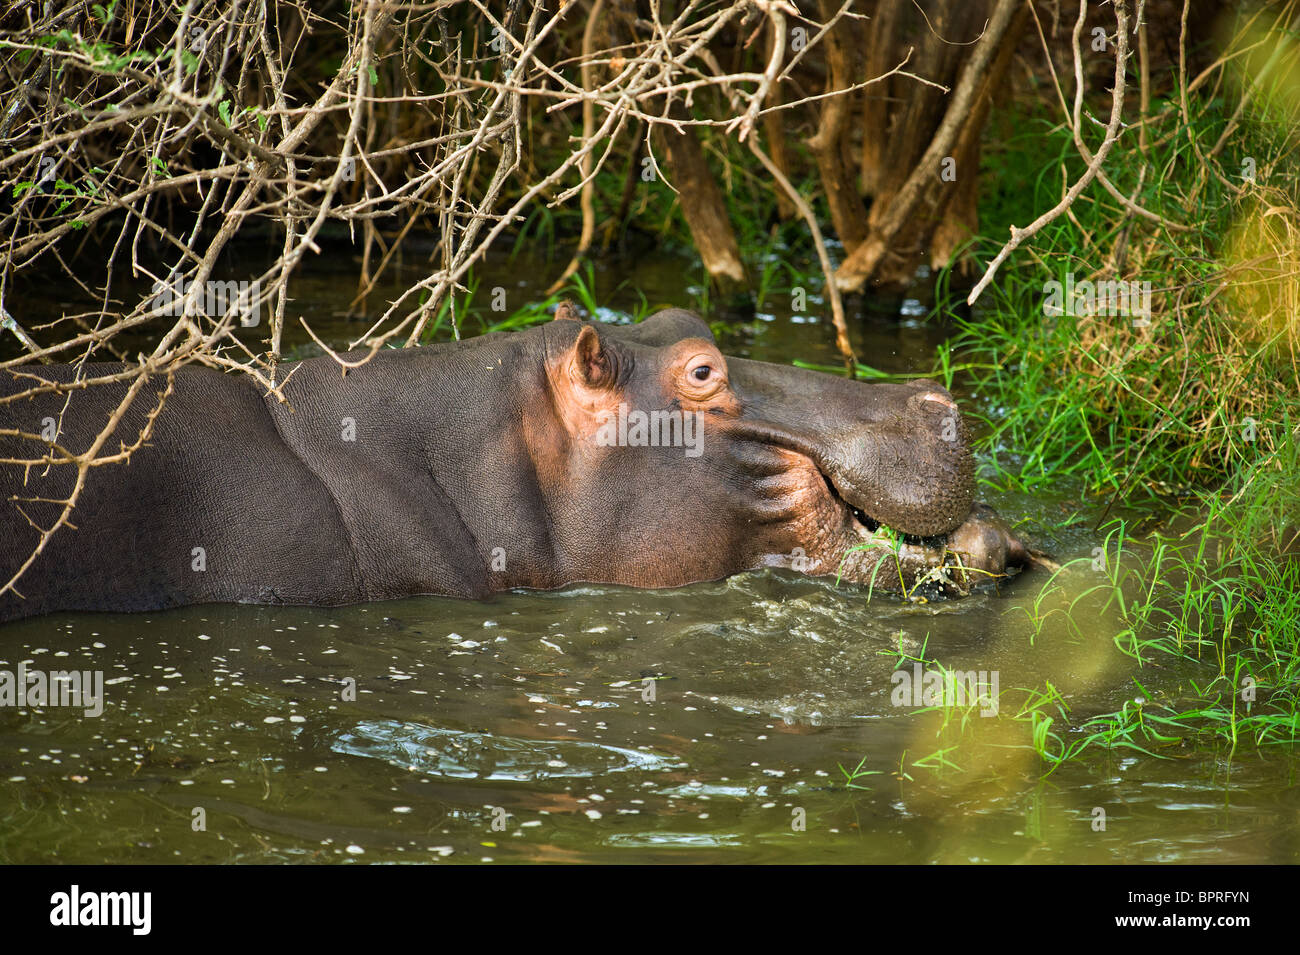 Hippo HIPPOPOTAMUS normalement connu comme un herbivore est de mâcher de la viande ( !) une antilope impala cadavre arraché du crocodile Banque D'Images